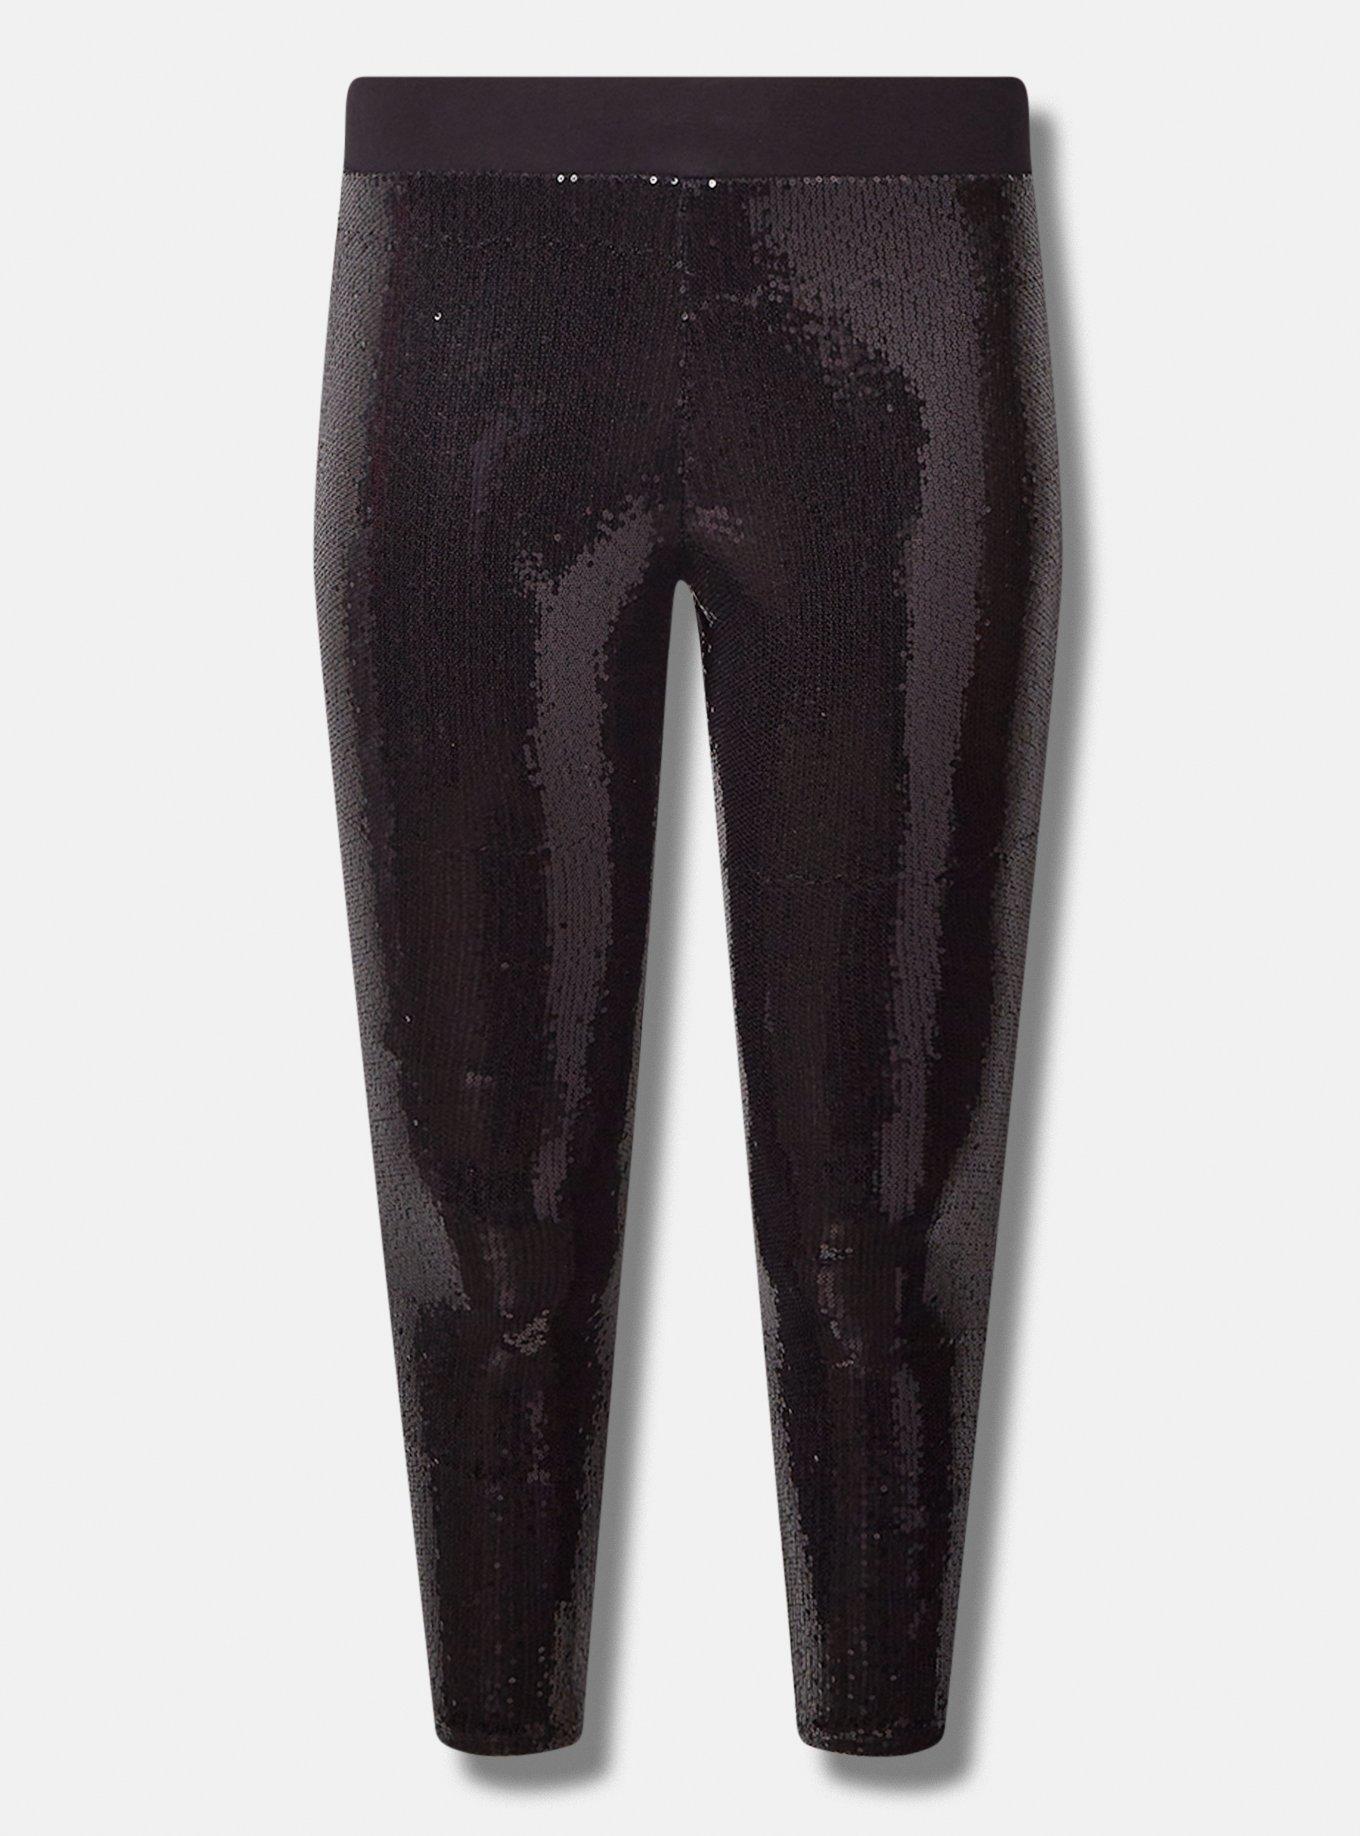 Sequined Leggings - Black - Ladies